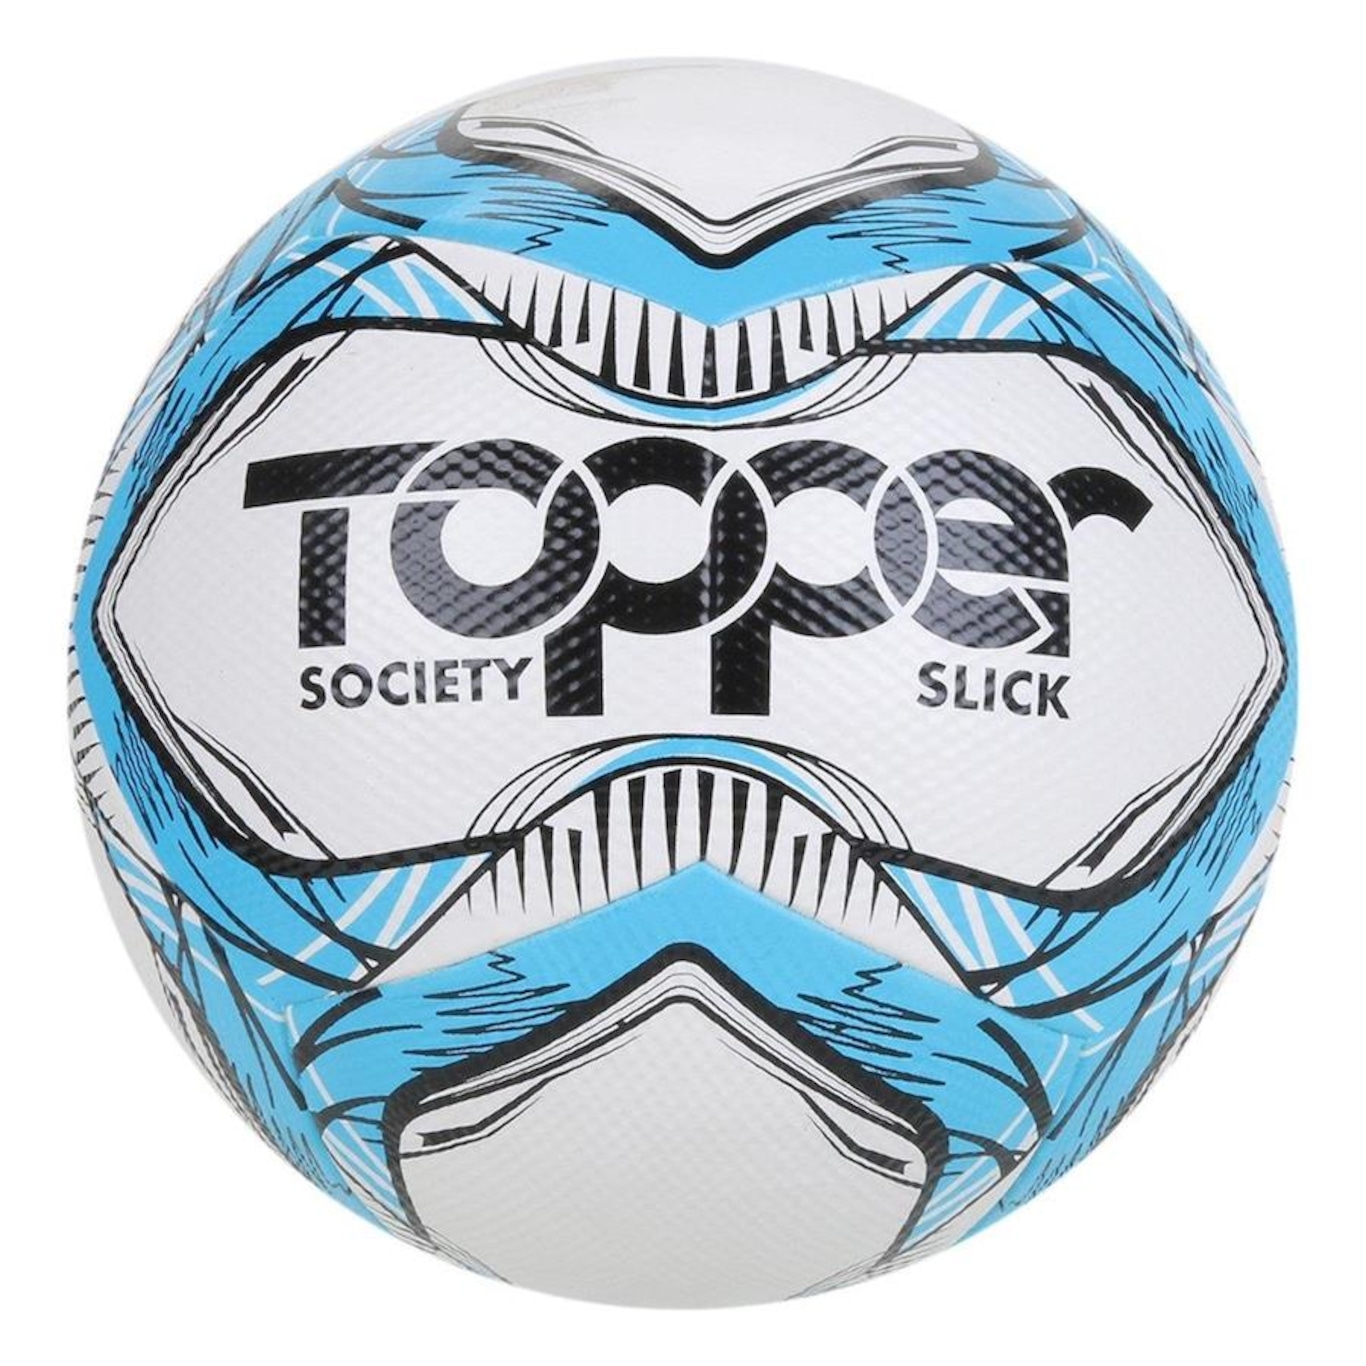 Bola de Futebol Society Topper Slick - Foto 1